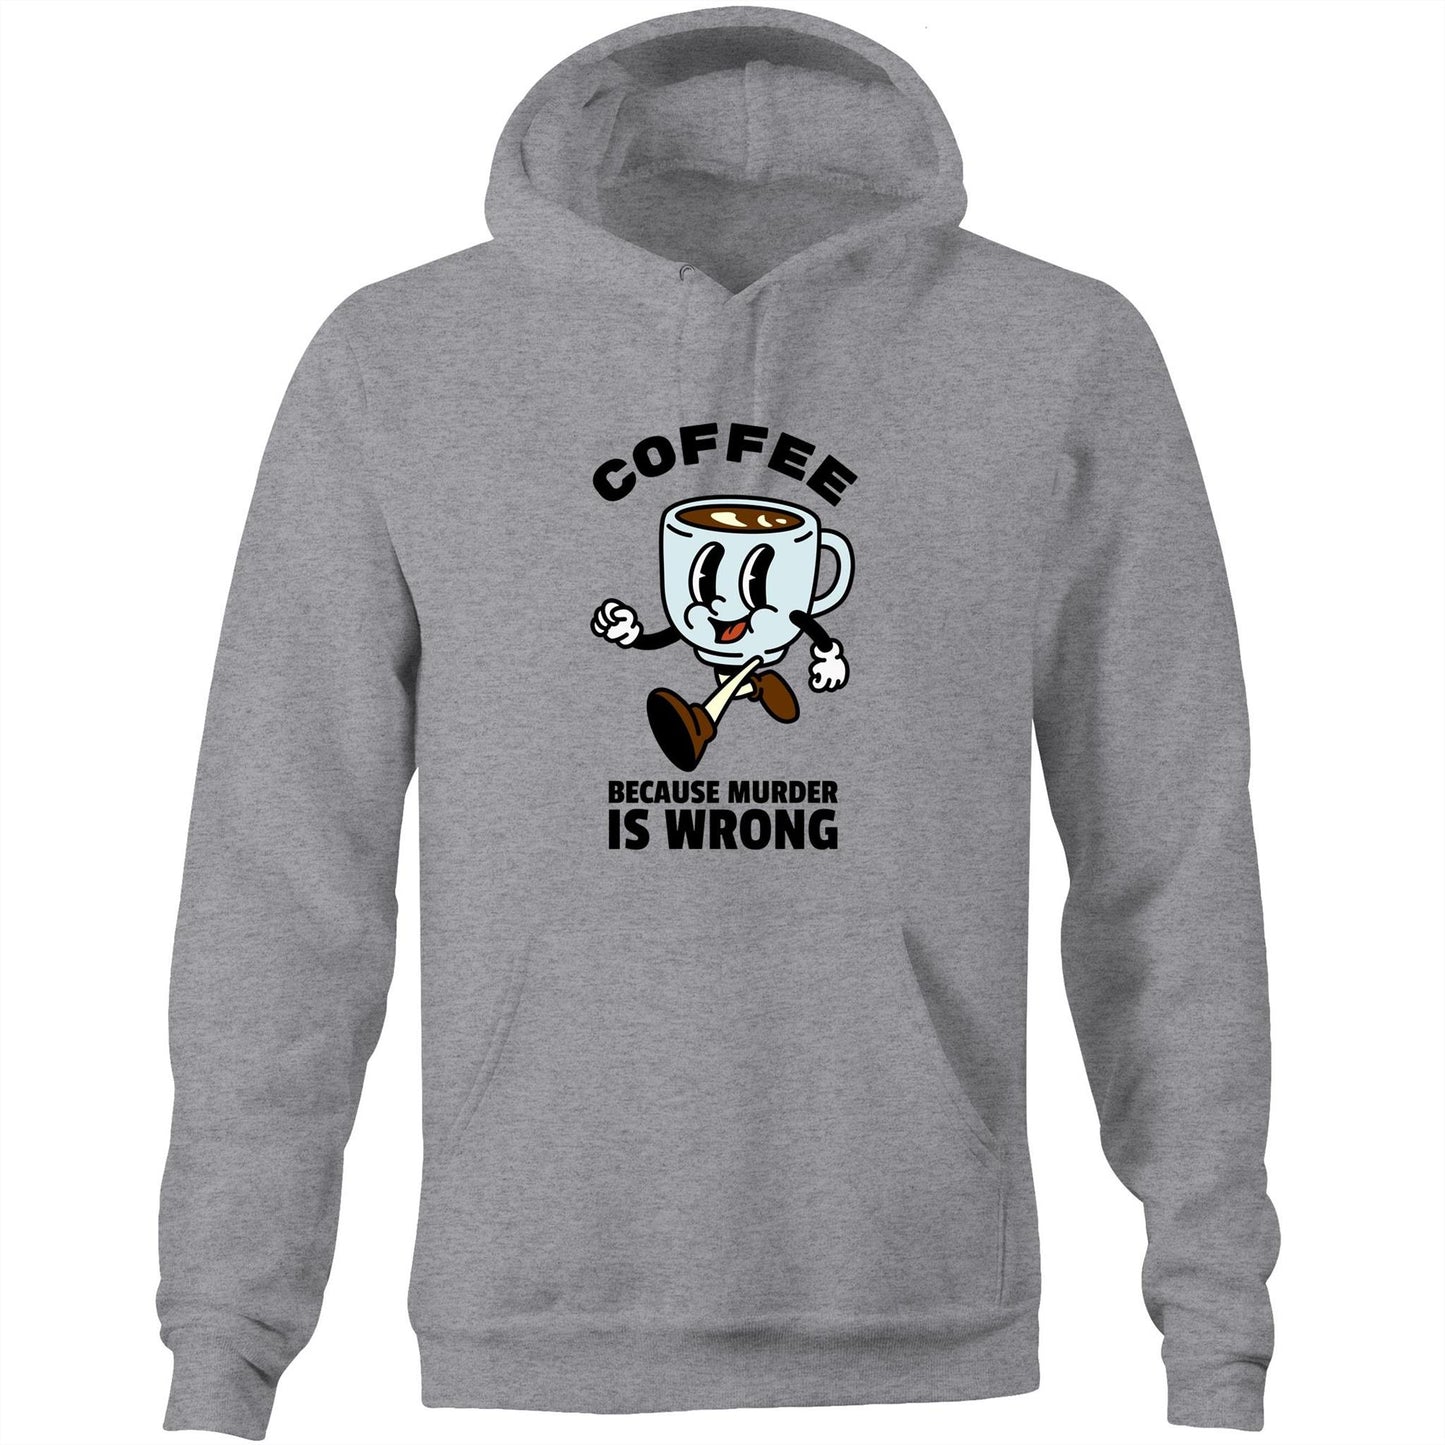 Coffee, Because Murder Is Wrong - Pocket Hoodie Sweatshirt Grey Marle Hoodie Coffee